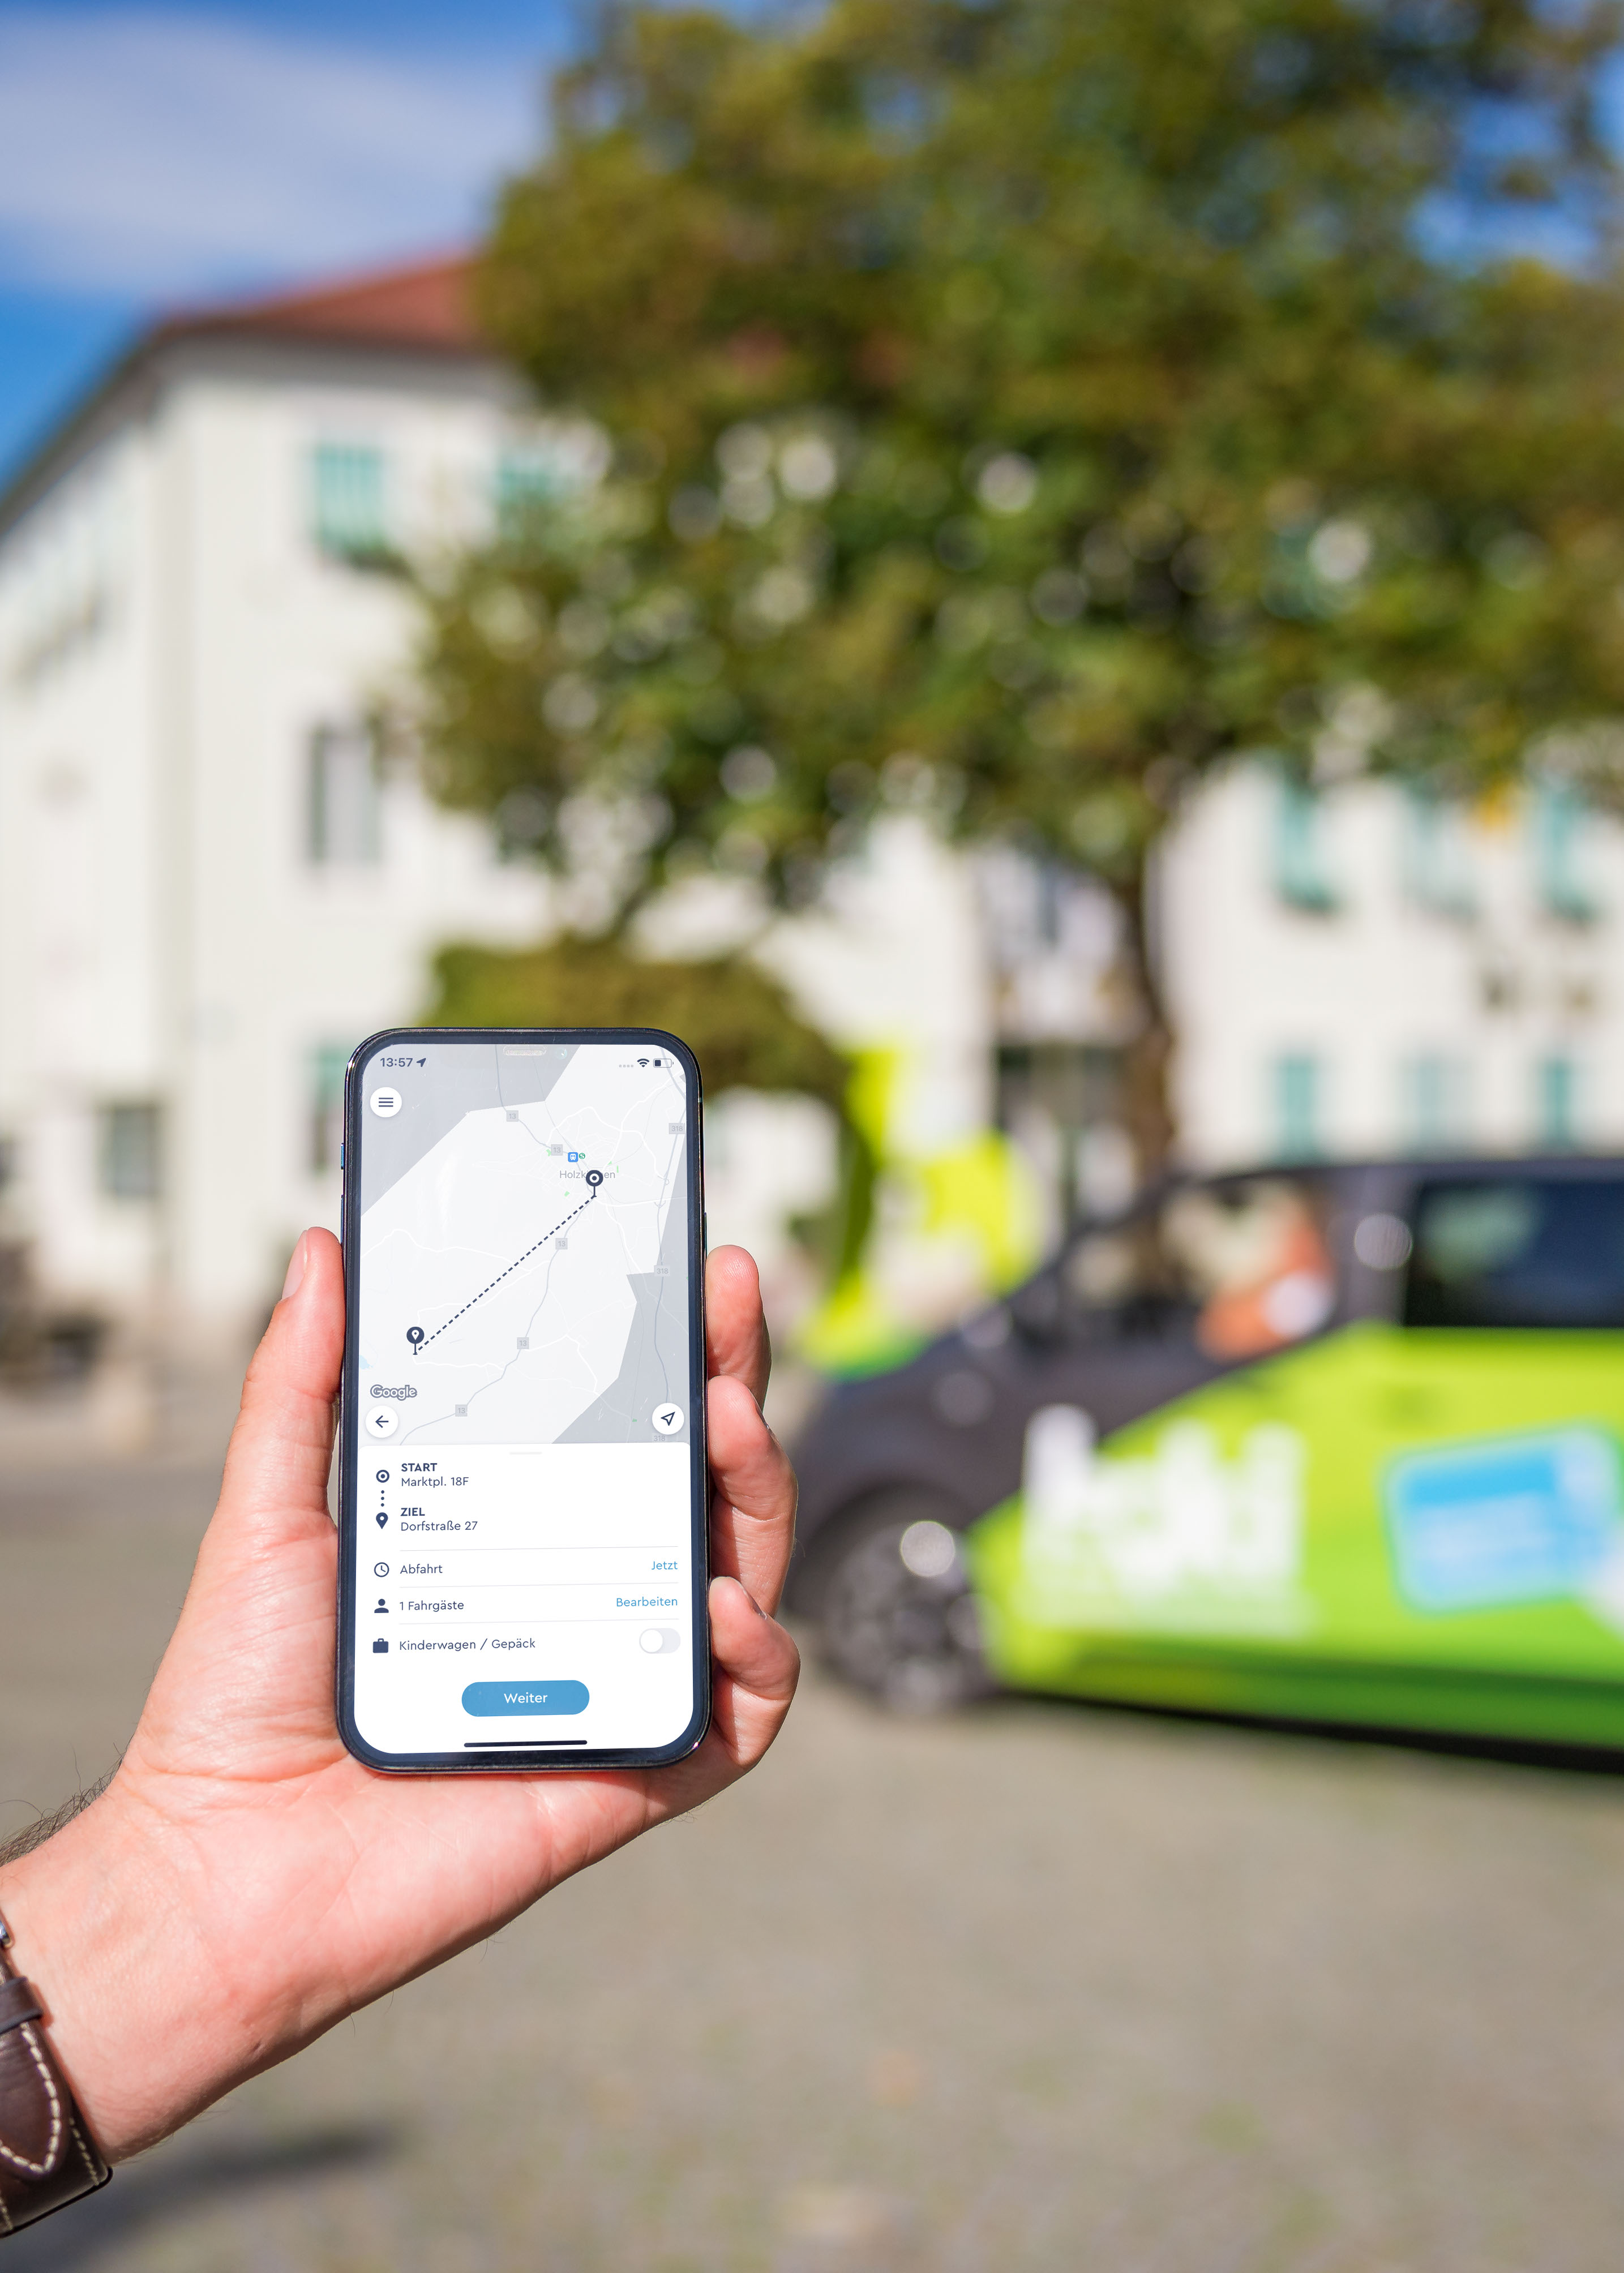 HandyParken München App - Wir bewegen Bayern